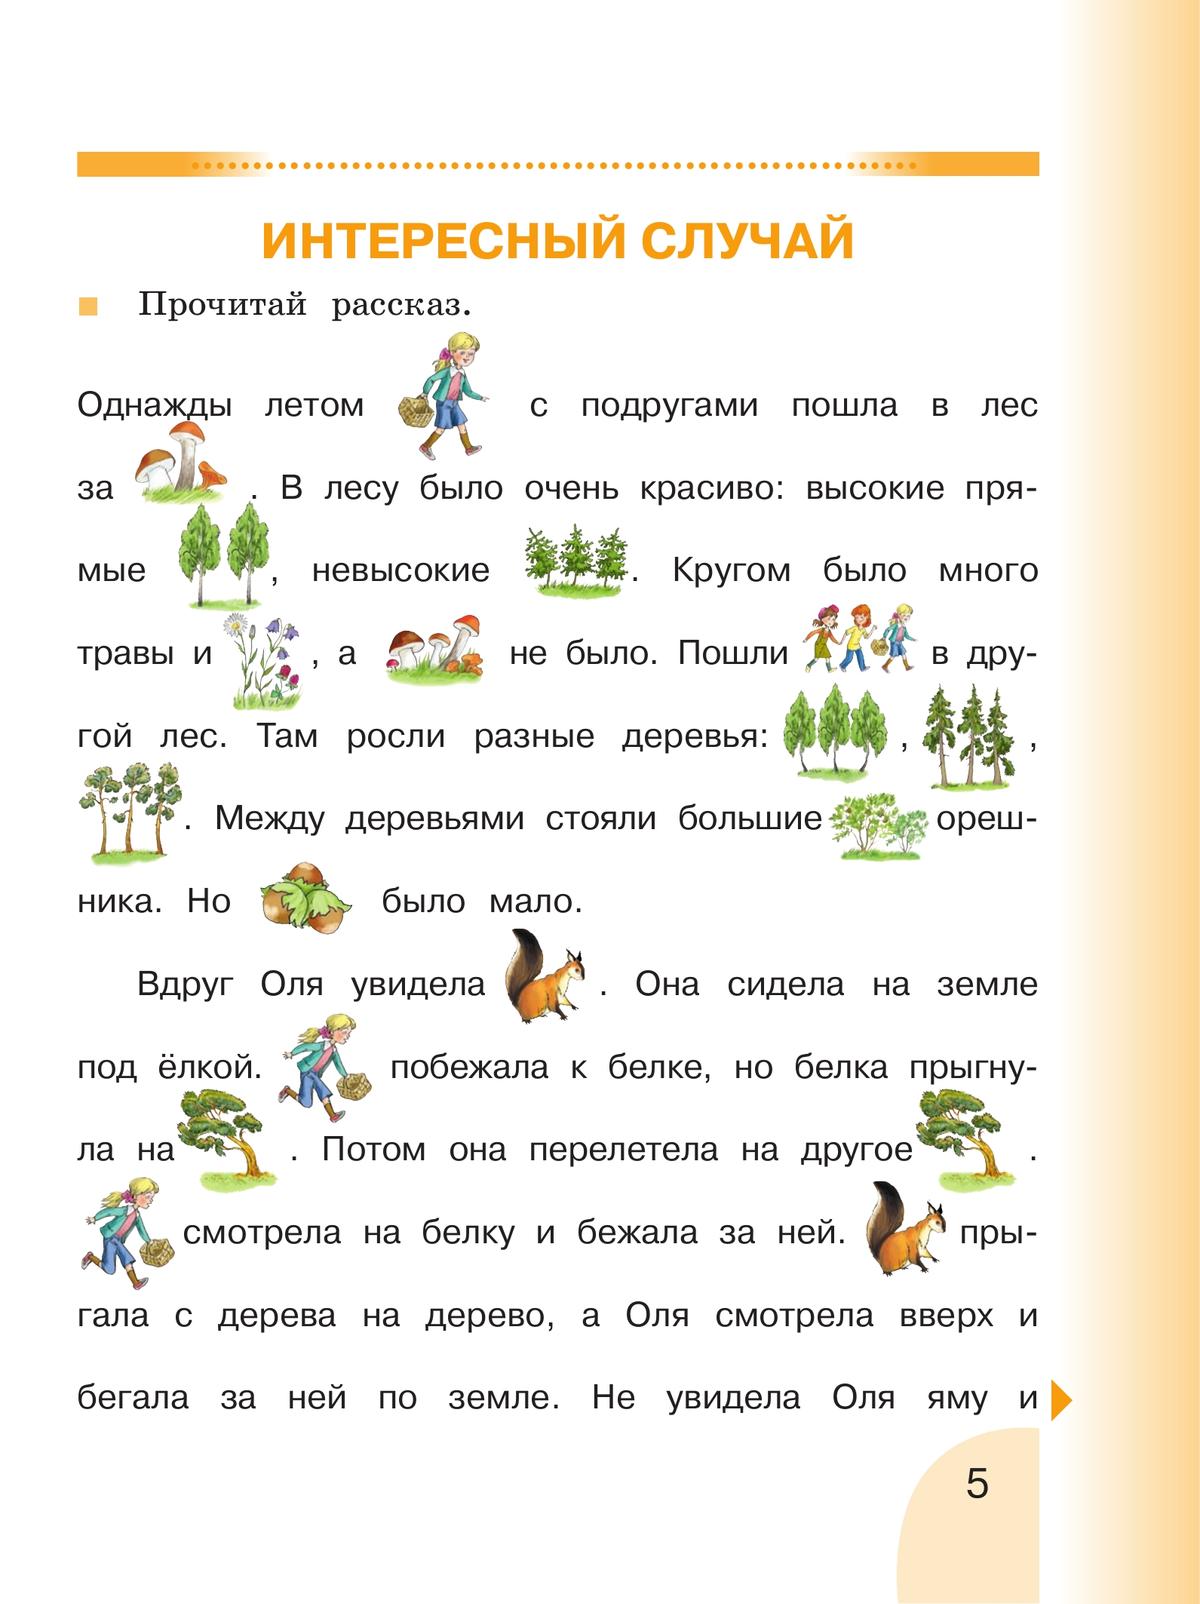 Русский язык. Развитие речи. 2 класс. Учебник. В 2 ч. Часть 1 (для глухих обучающихся) 2